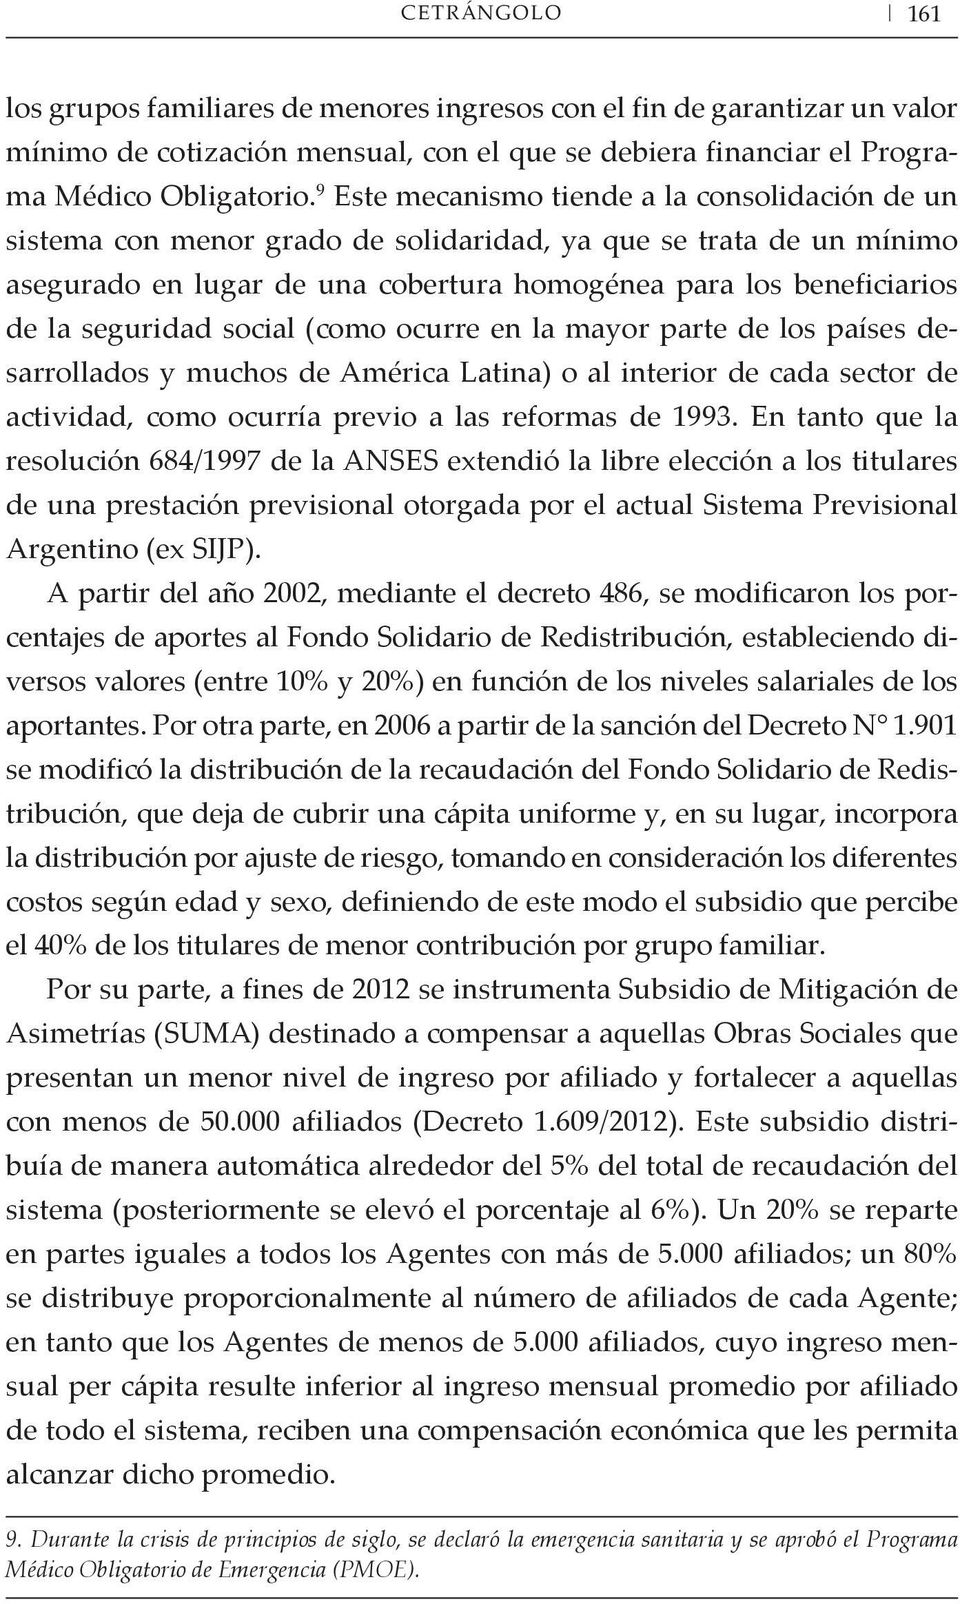 seguridad social (como ocurre en la mayor parte de los países desarrollados y muchos de América Latina) o al interior de cada sector de actividad, como ocurría previo a las reformas de 1993.